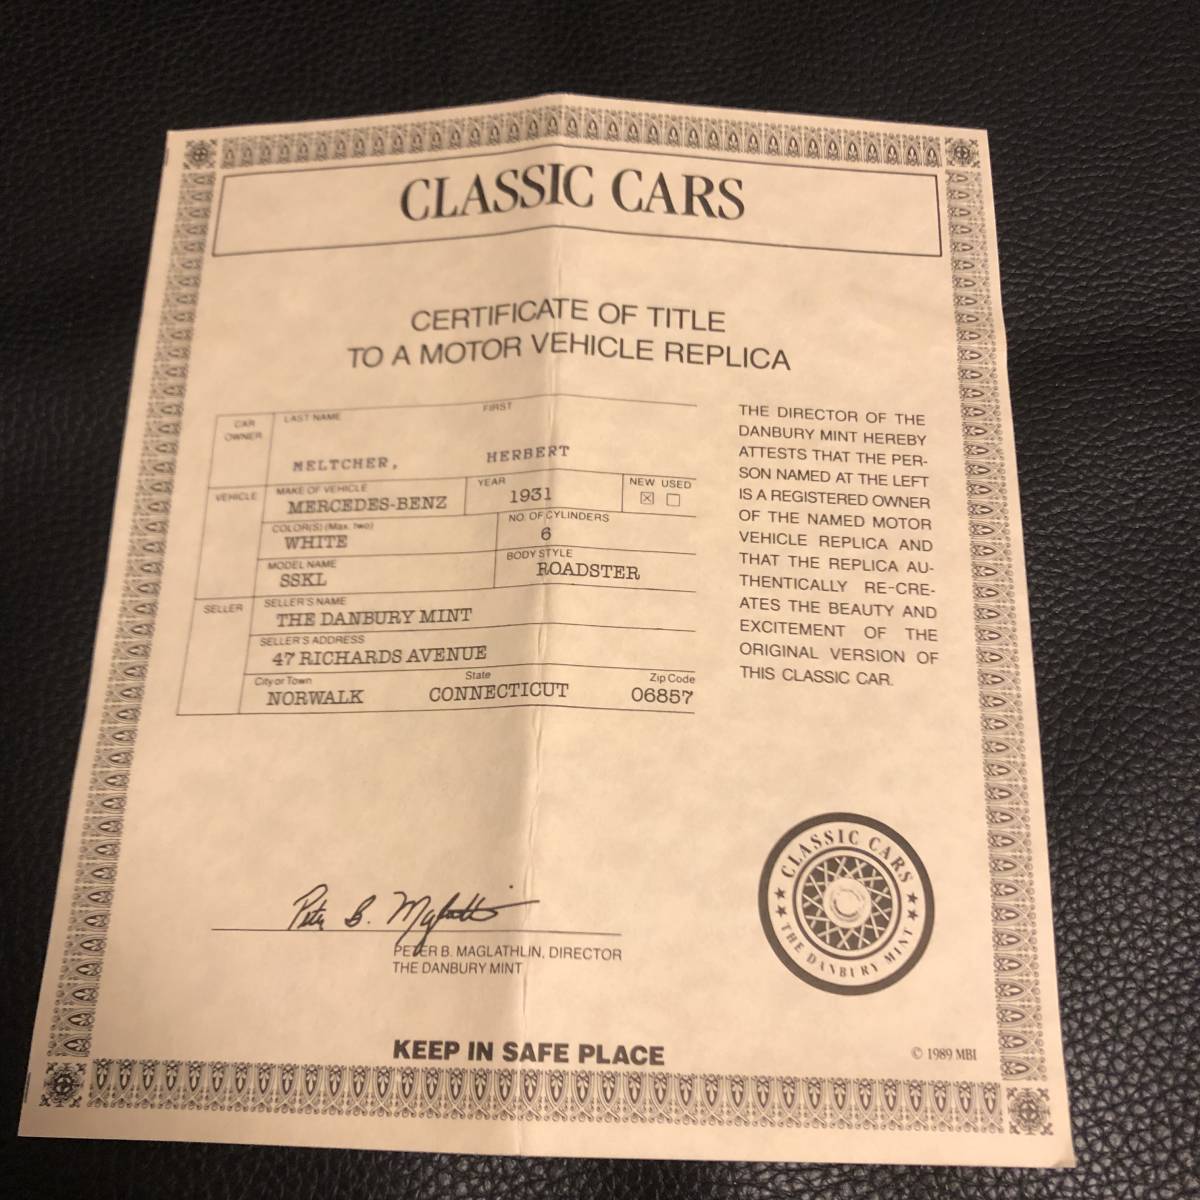  beautiful goods / original box * certificate attaching * Dan Bally mint 1931 Mercedes Benz SSKL 1/24 / Lupin III * Vintage 